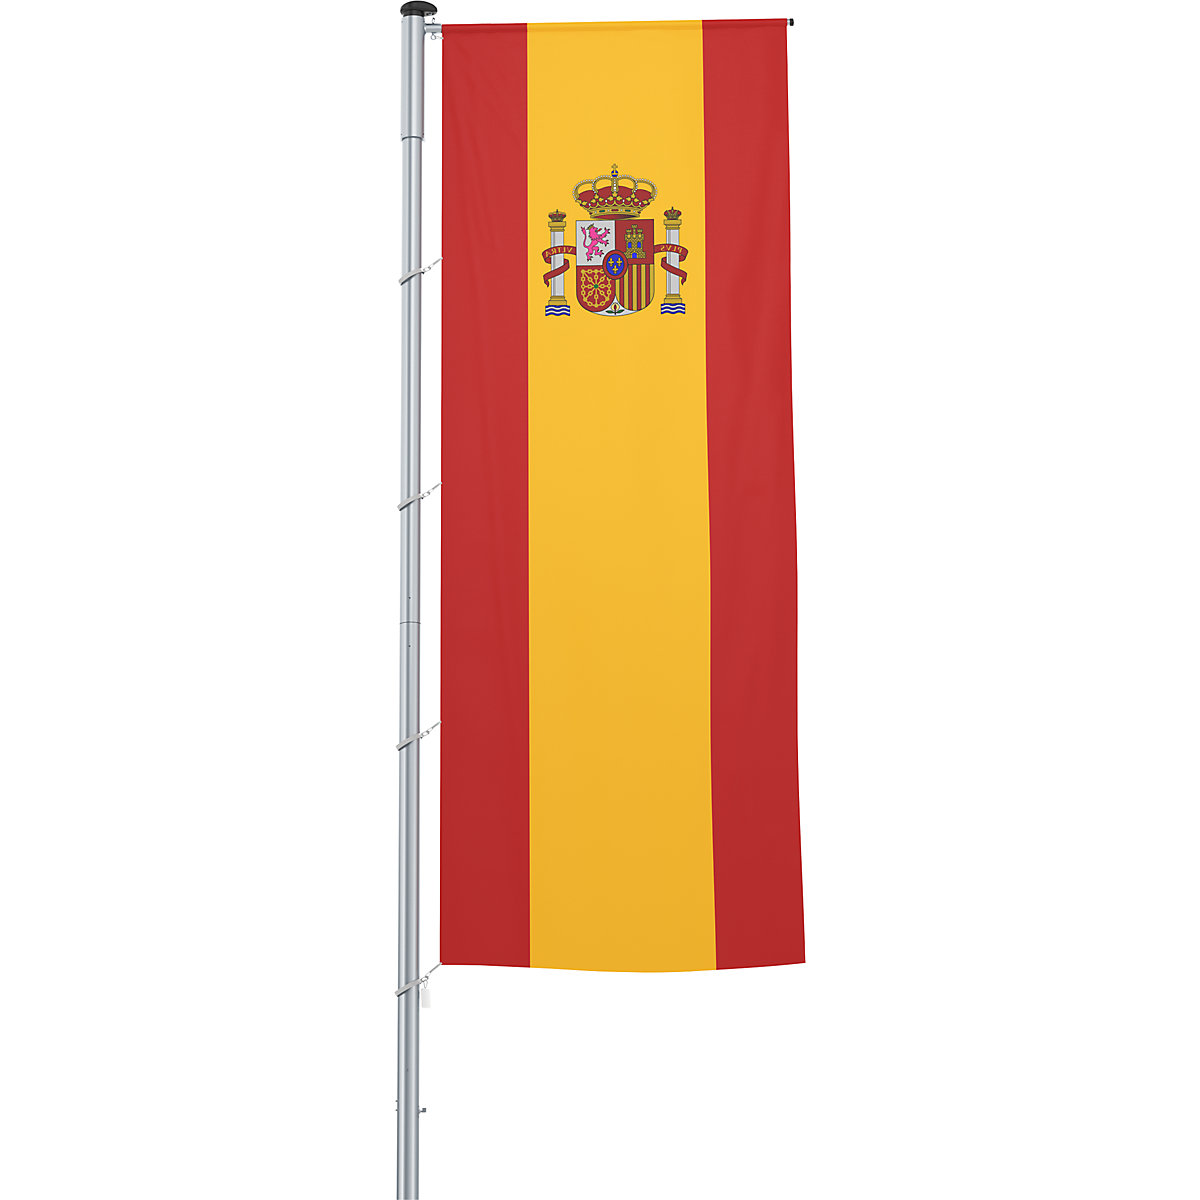 Zastava s prečko/državna zastava - Mannus